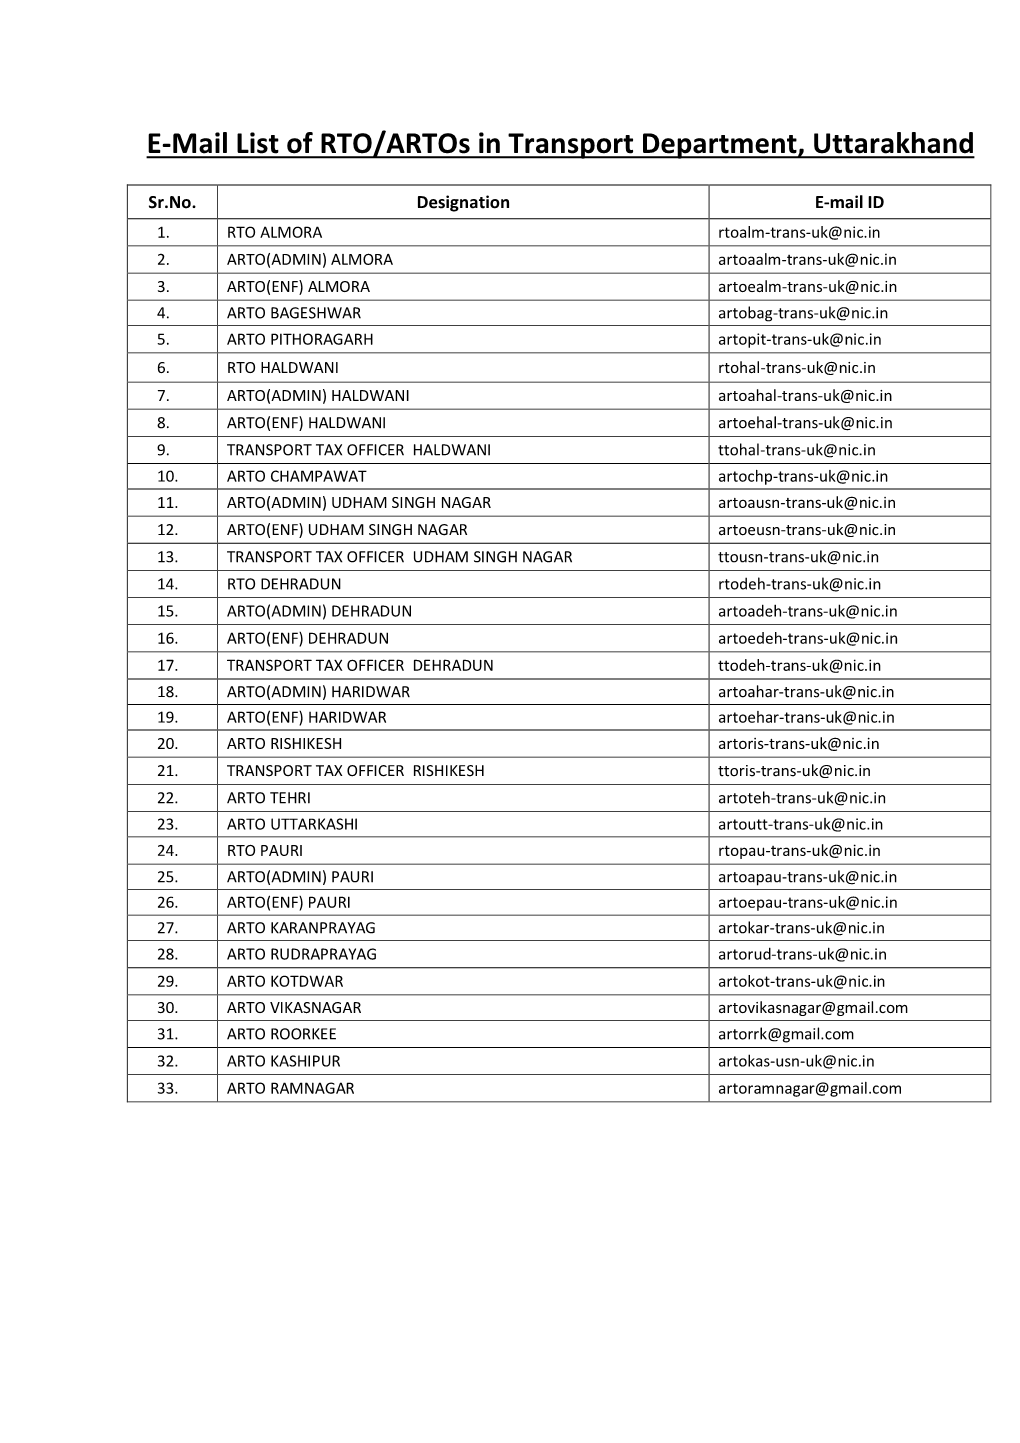 E-Mail List of RTO/Artos in Transport Department, Uttarakhand